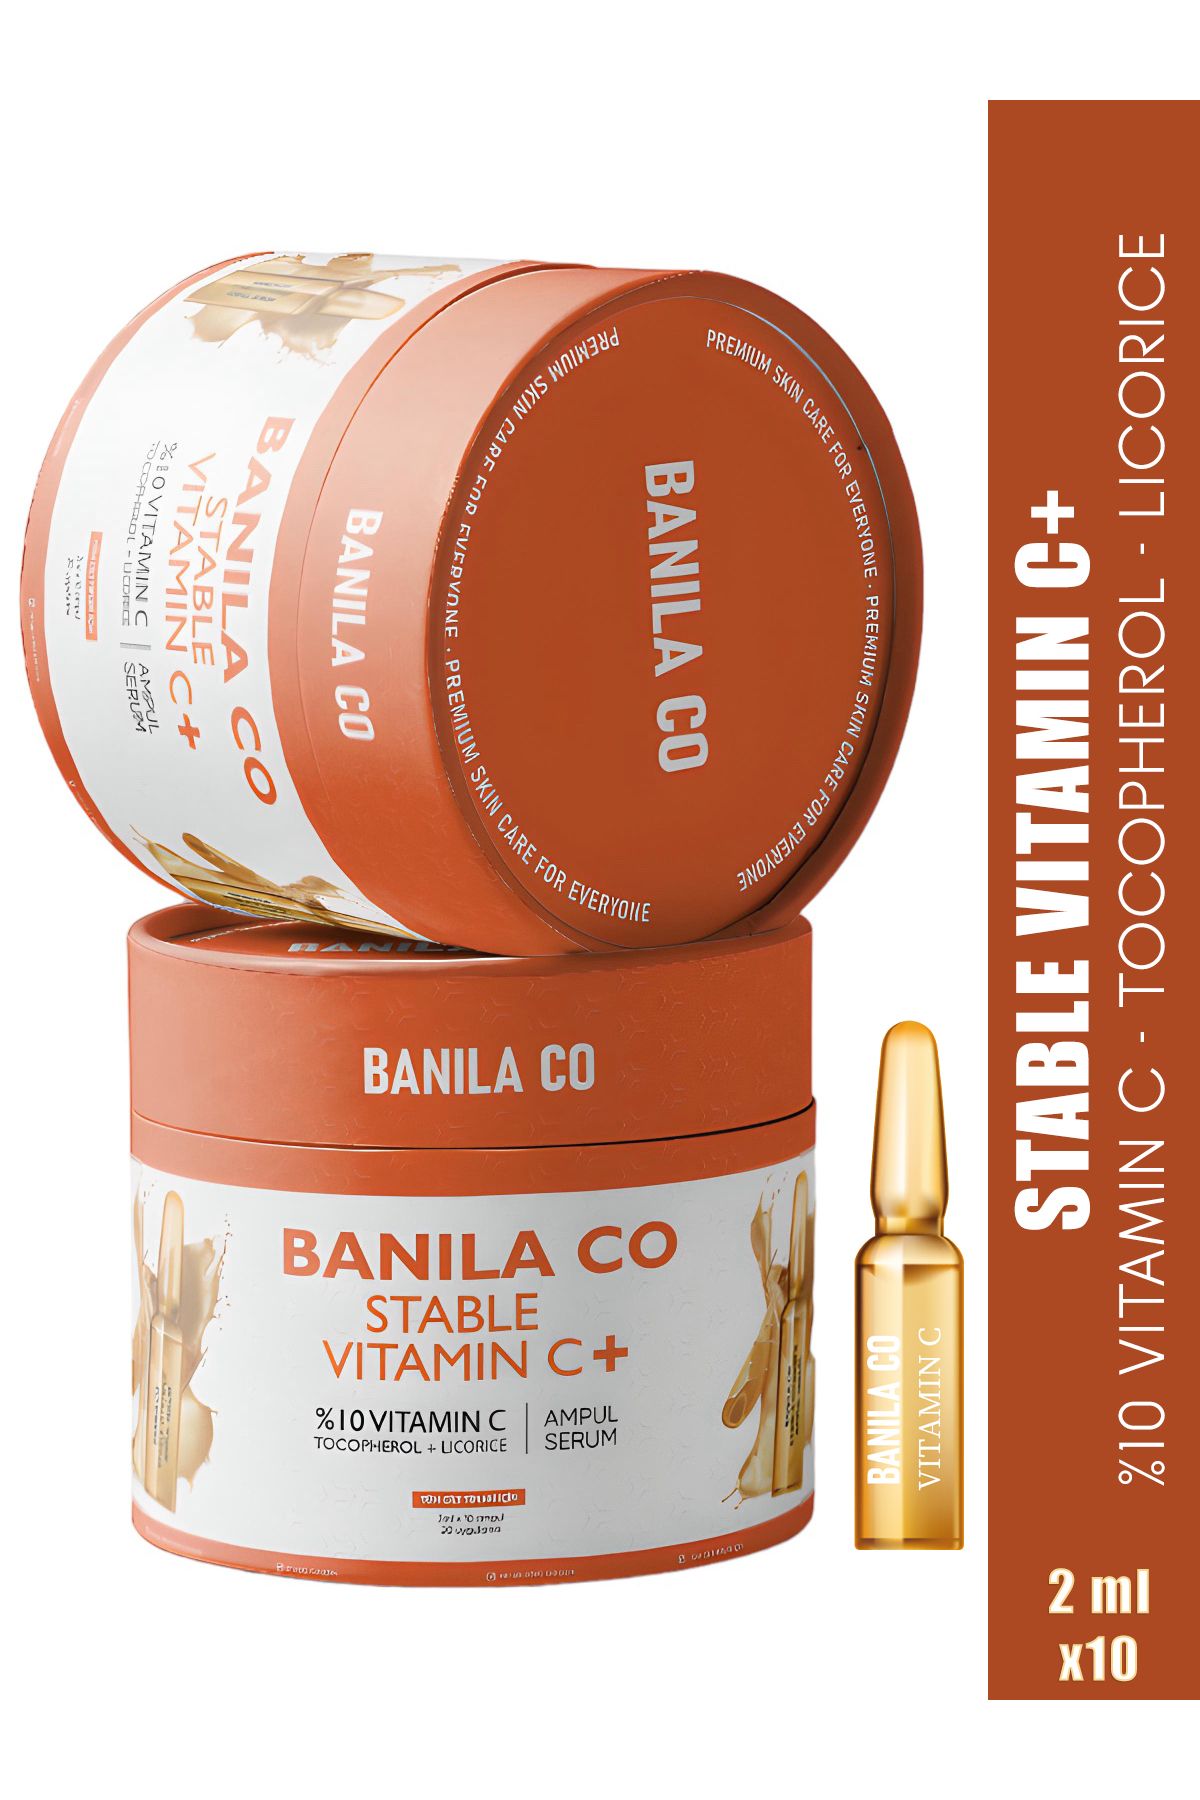 Banila Co C Vitamini Serum, Leke Karşıtı, Aydınlatıcı, Canlandırıcı, Stable Vitamin C Ampul Serum 2 ml X 10